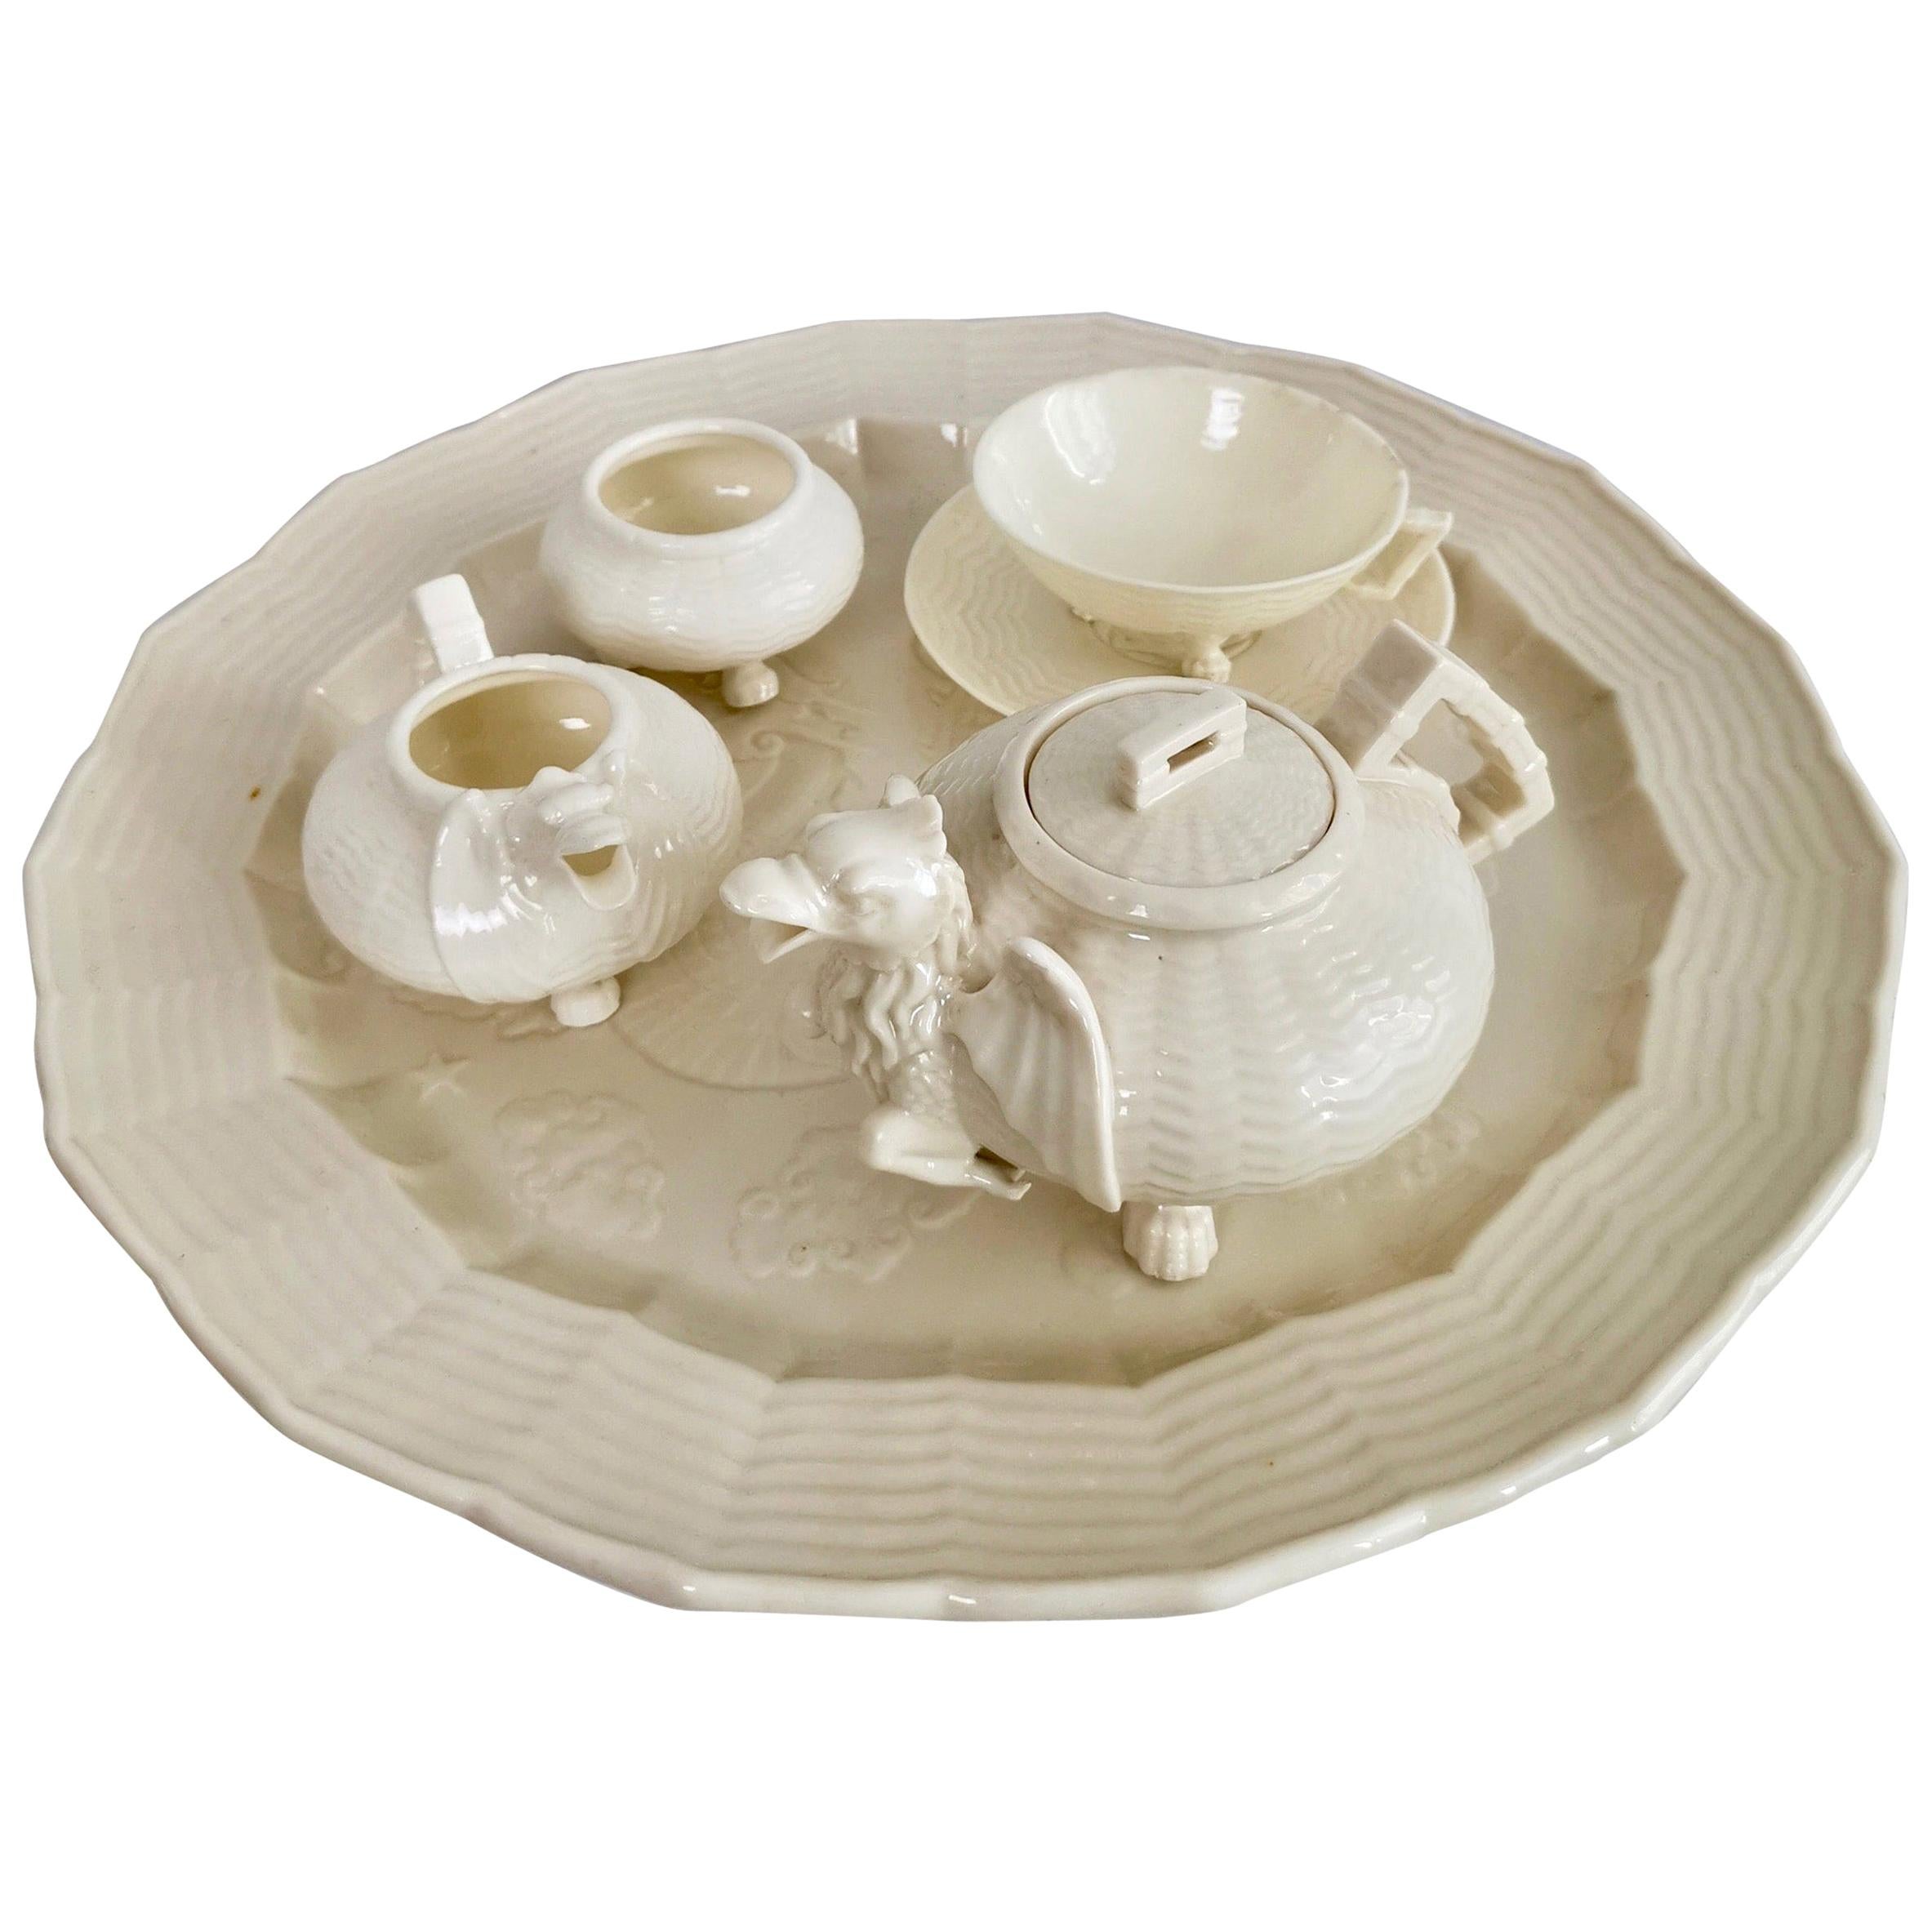 Belleek Porcelain Cabaret Tea Set, White, Japonism Dragon, Victorian, 1863-1891